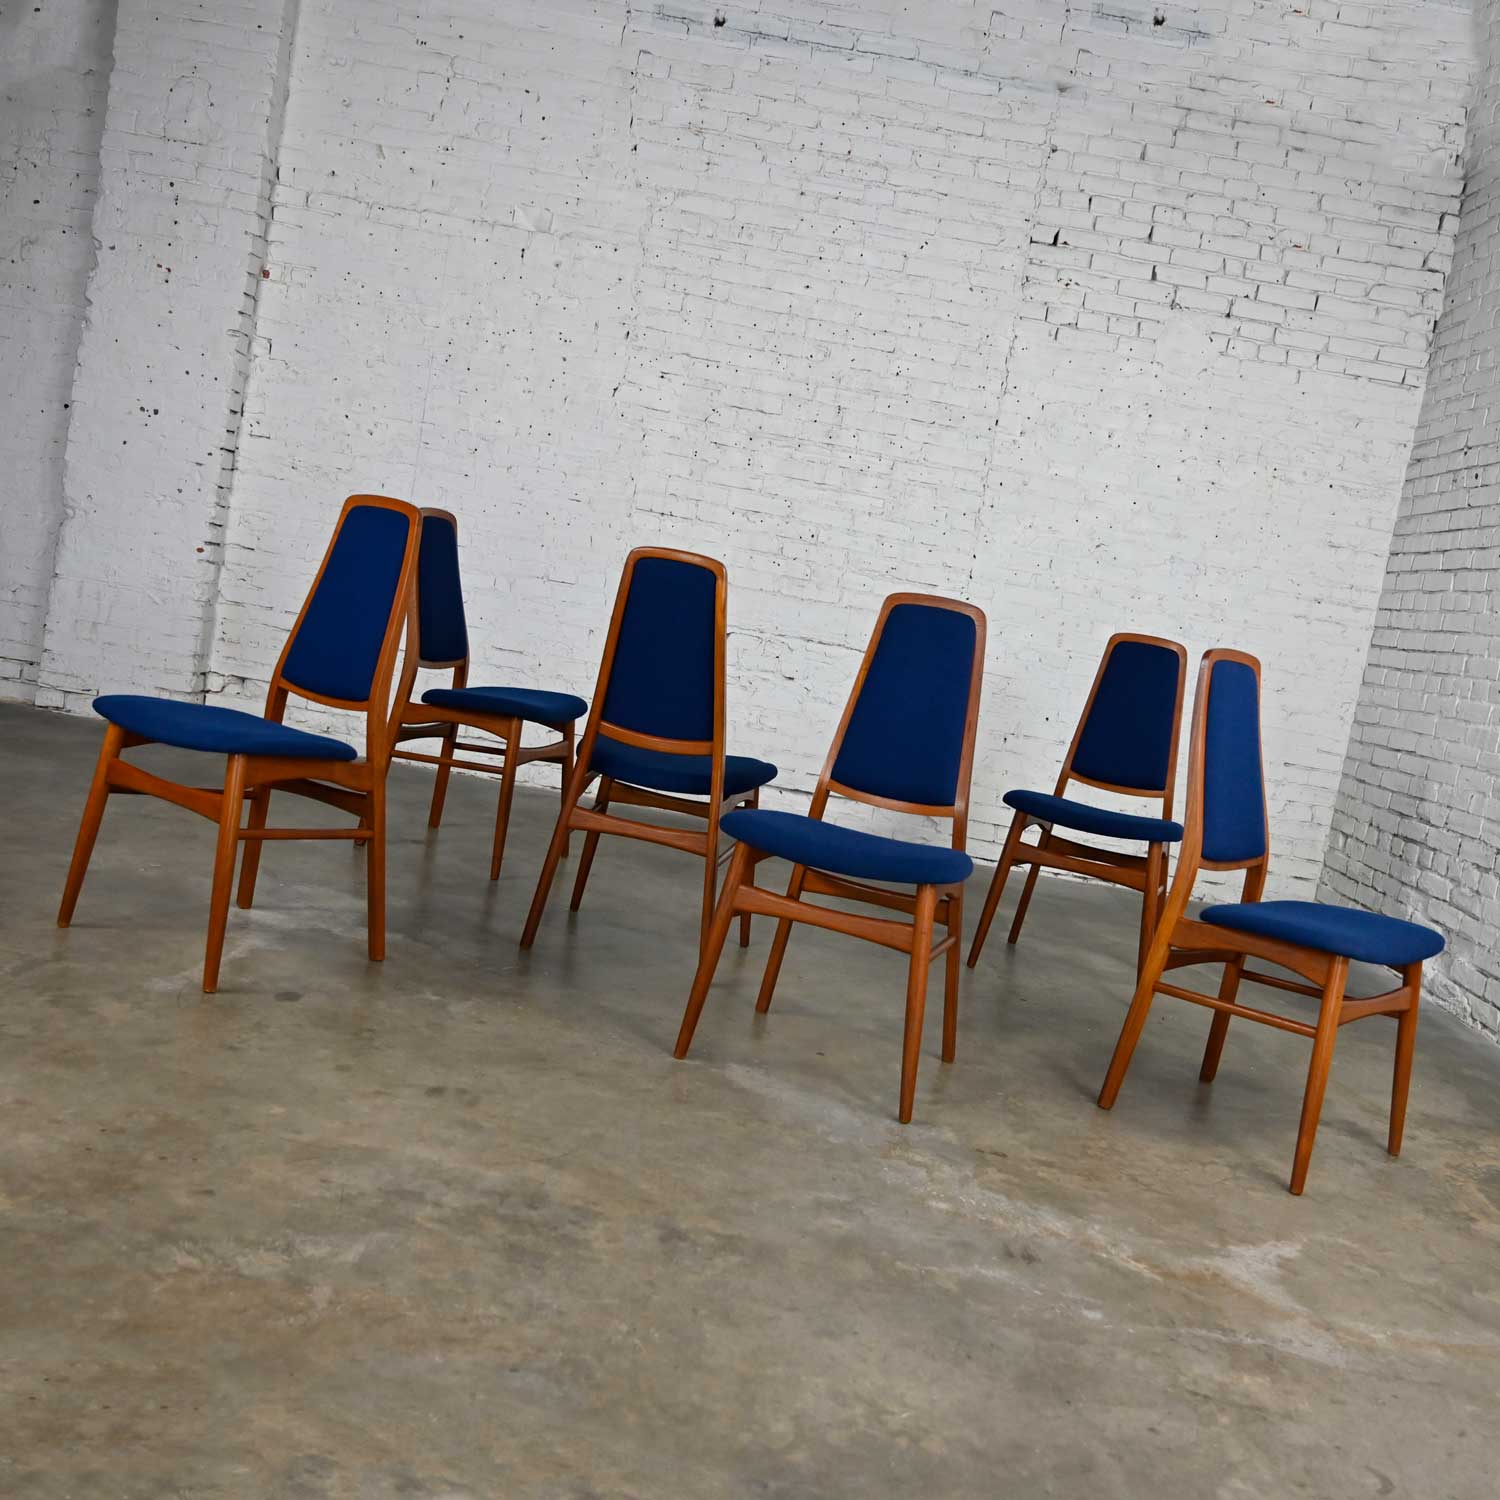 6 Vintage Vamdrup Stolefabrik Scandinavian Modern Teak & Blue Dining Chairs Style Eva Chair by Niels Koefoed